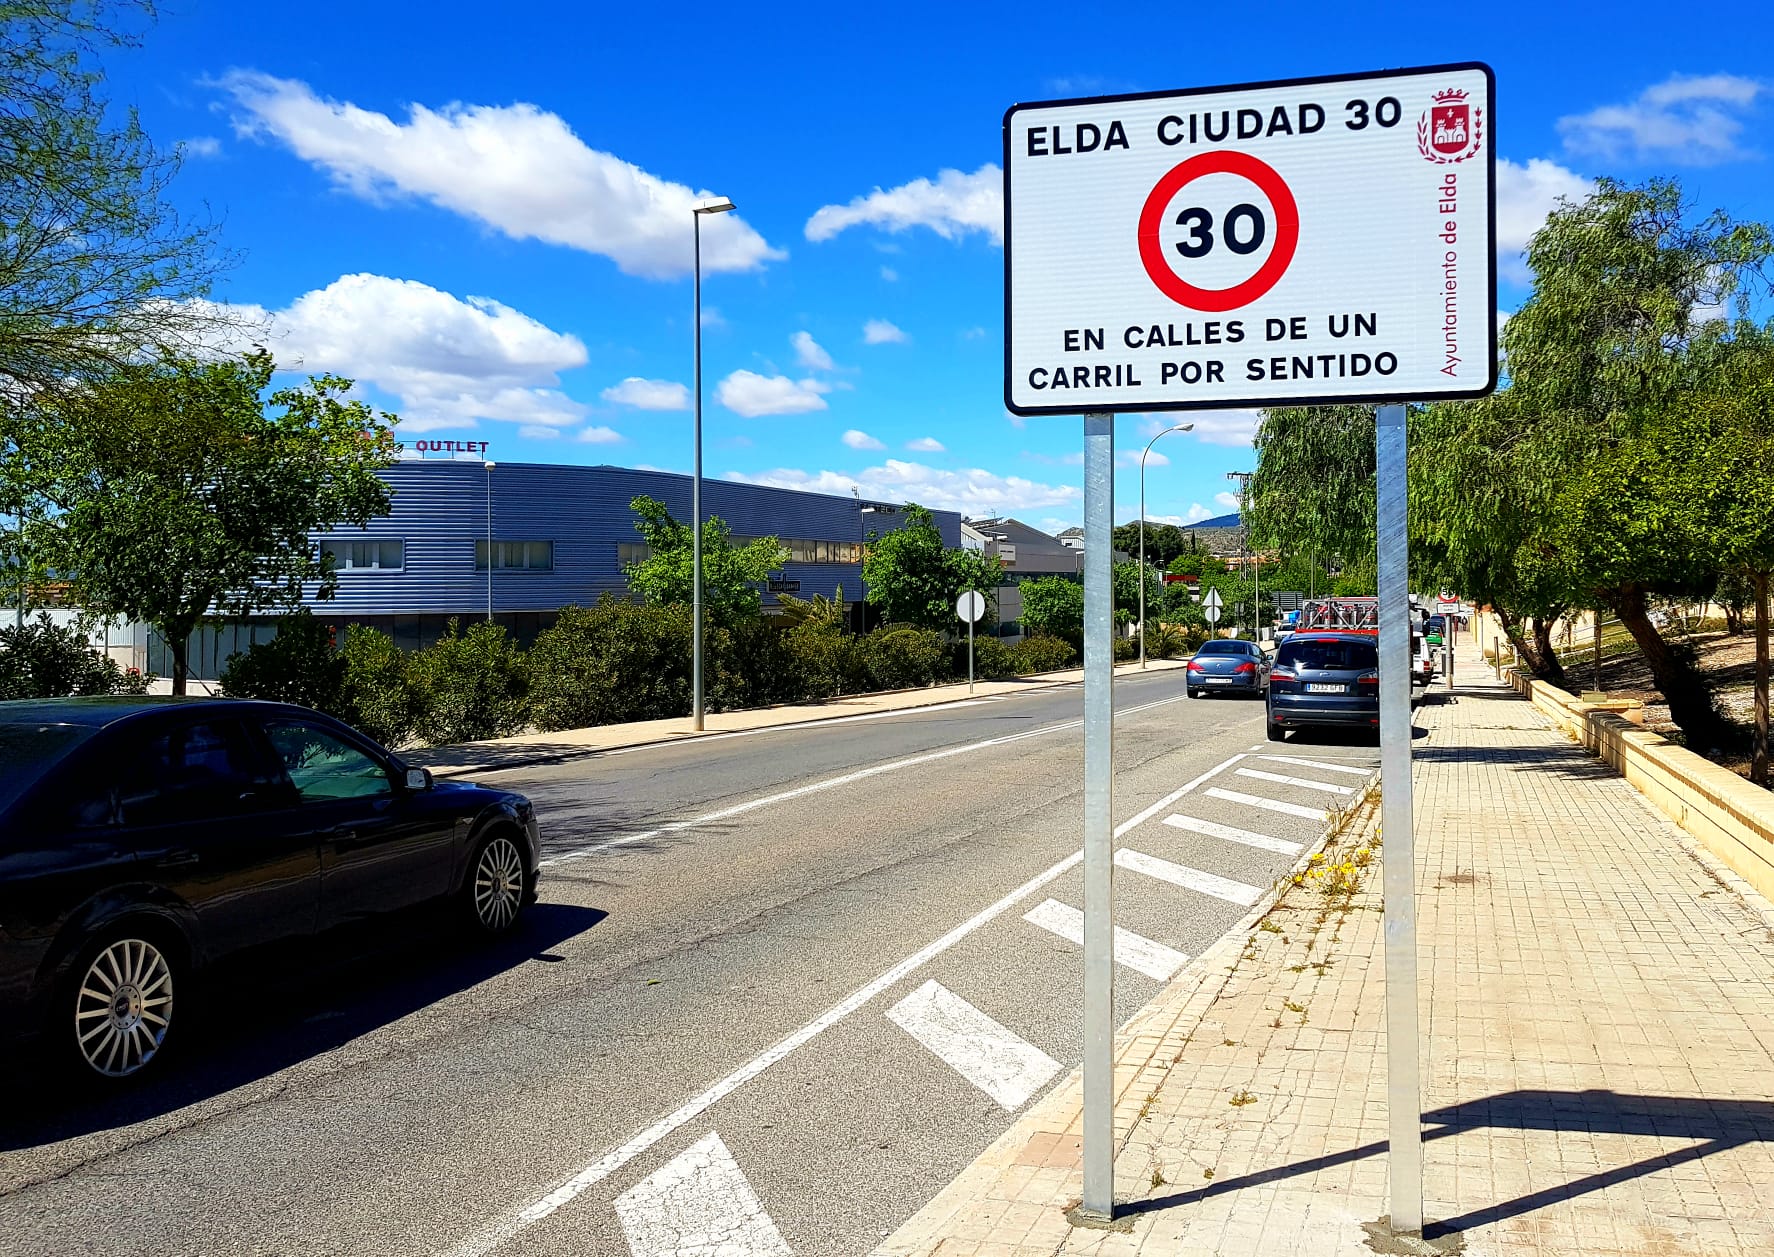 Los nuevos límites genéricos de velocidad en vías urbanas que han entrado en vigor hoy afectan al 80% de las calles de Elda